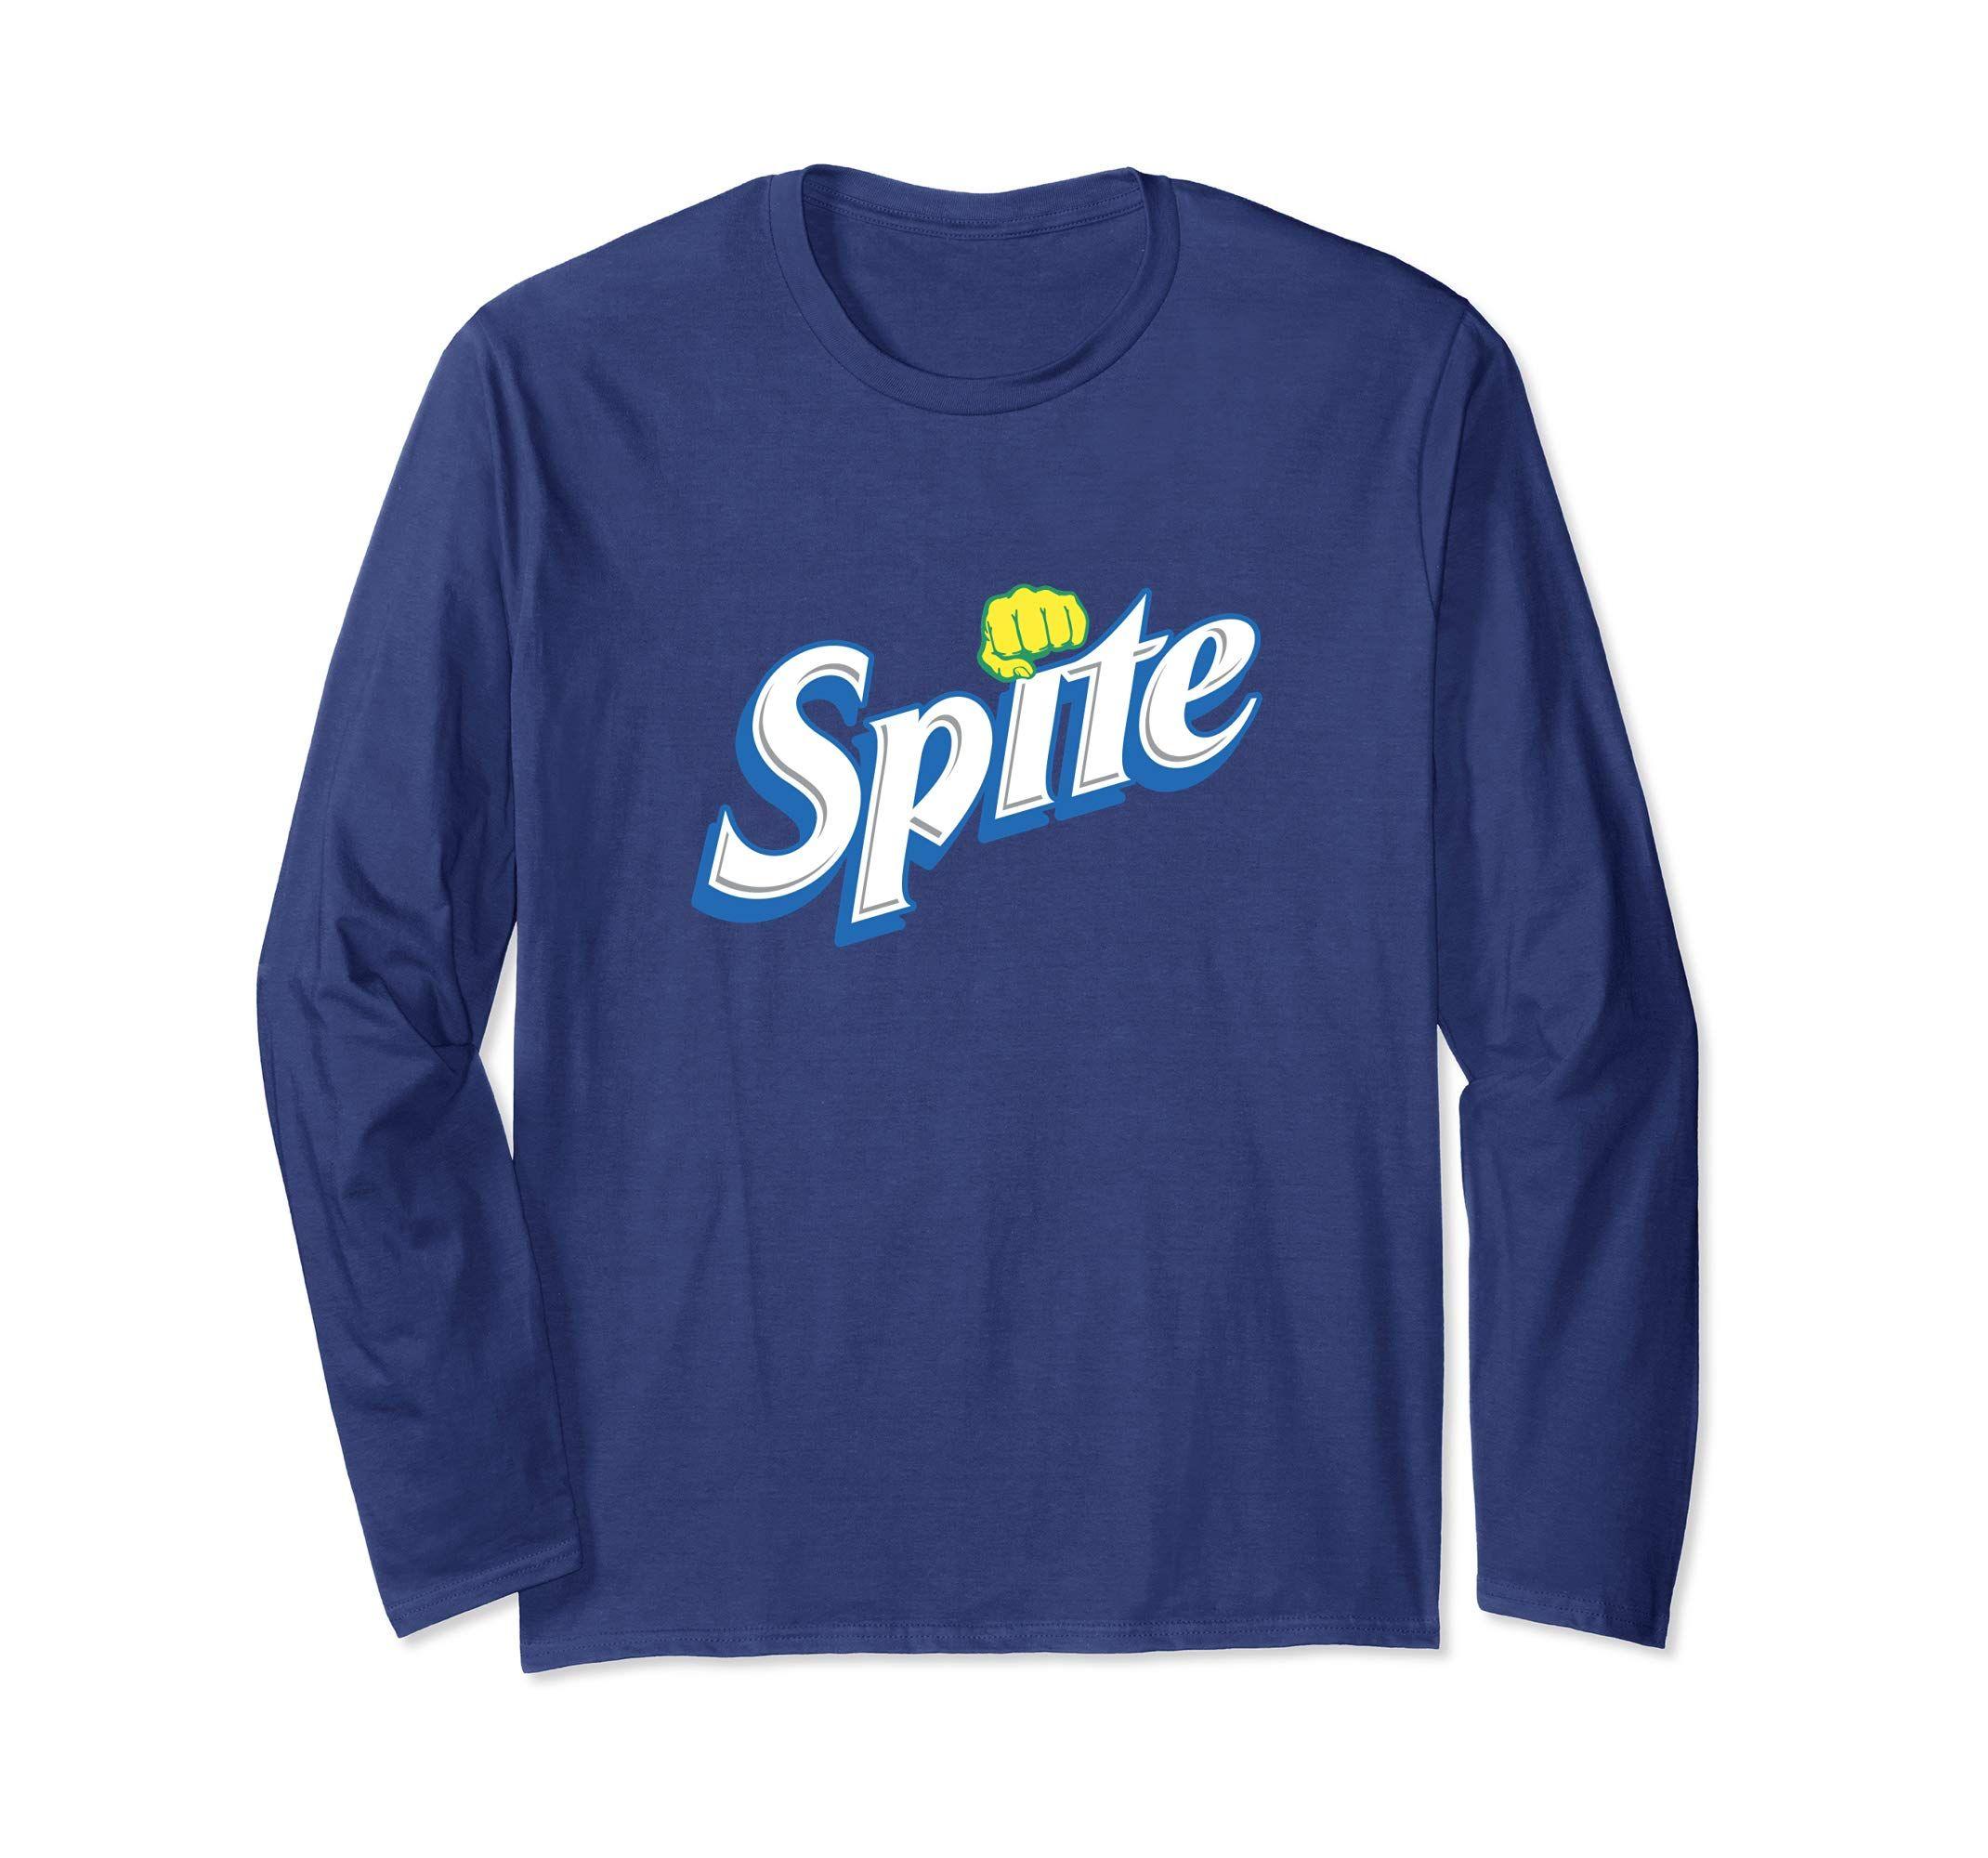 Spite Logo - Amazon.com: Spite Novelty Funny Witty logo Parody sarcastic shirt ...